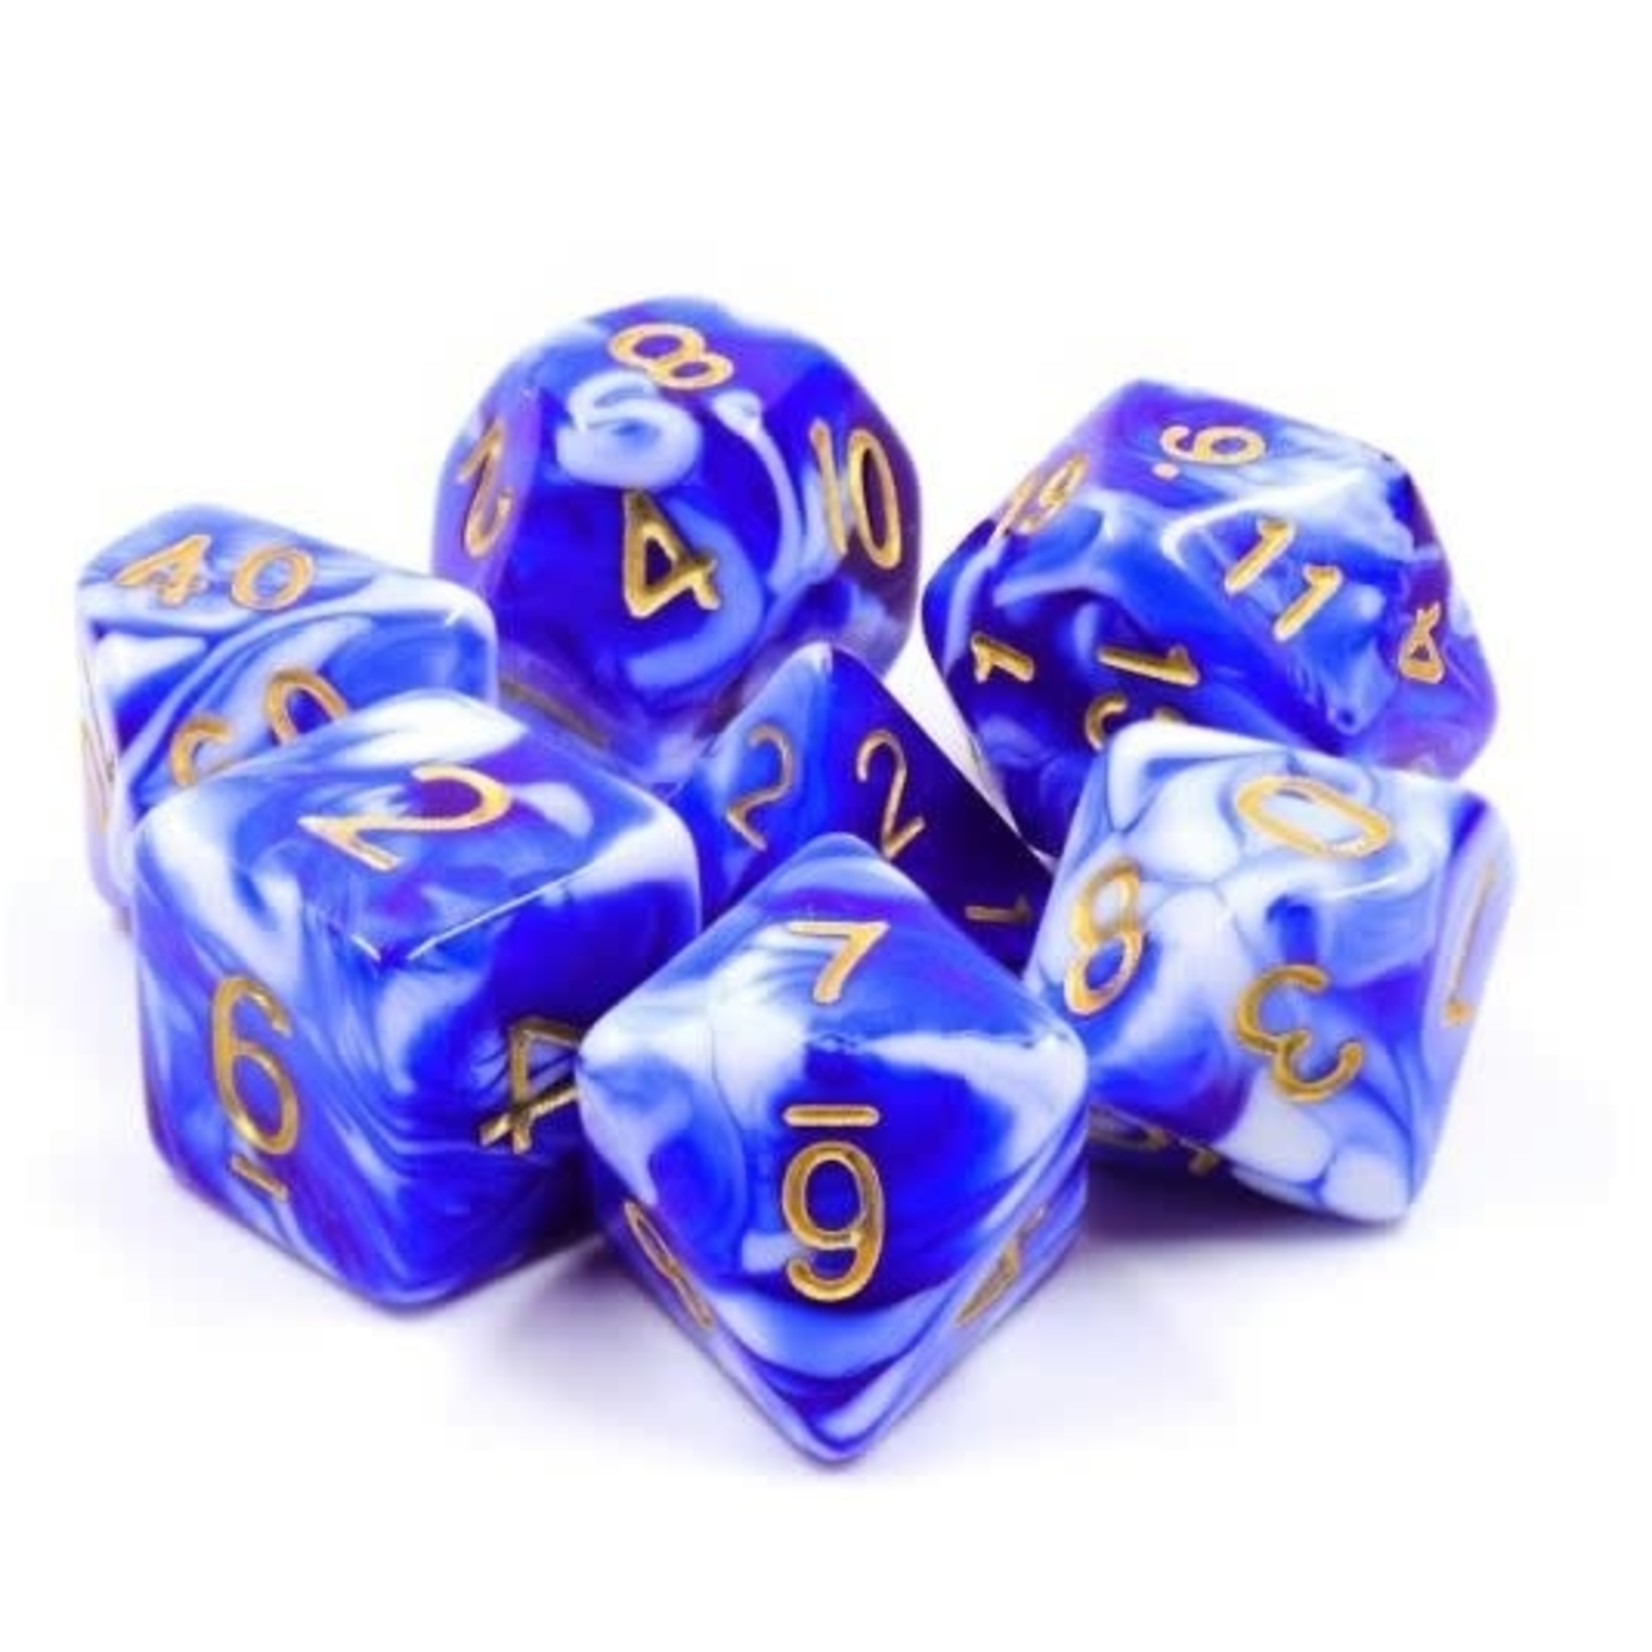 7 Set Polyhedral Dice - Blue Porcelain